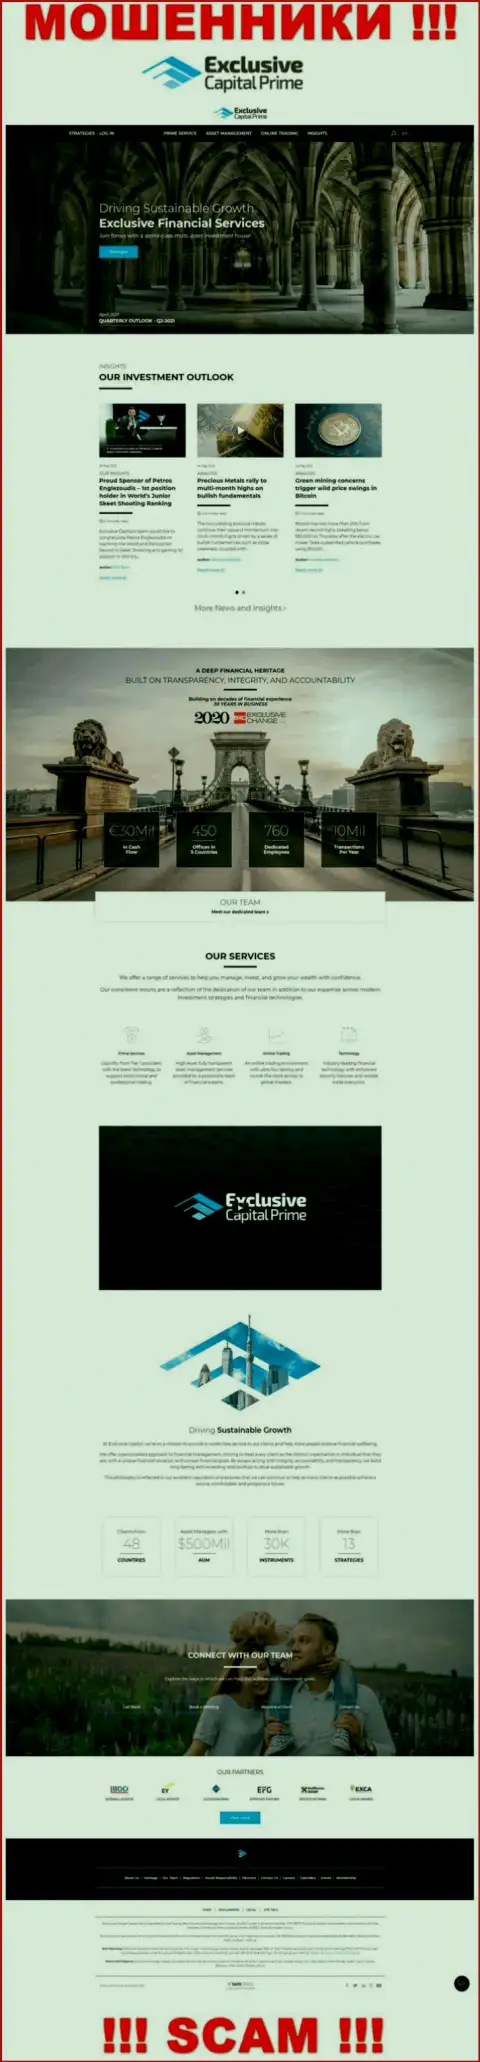 Скрин официального веб-сайта Эксклюзив Капитал - ExclusiveCapital Com